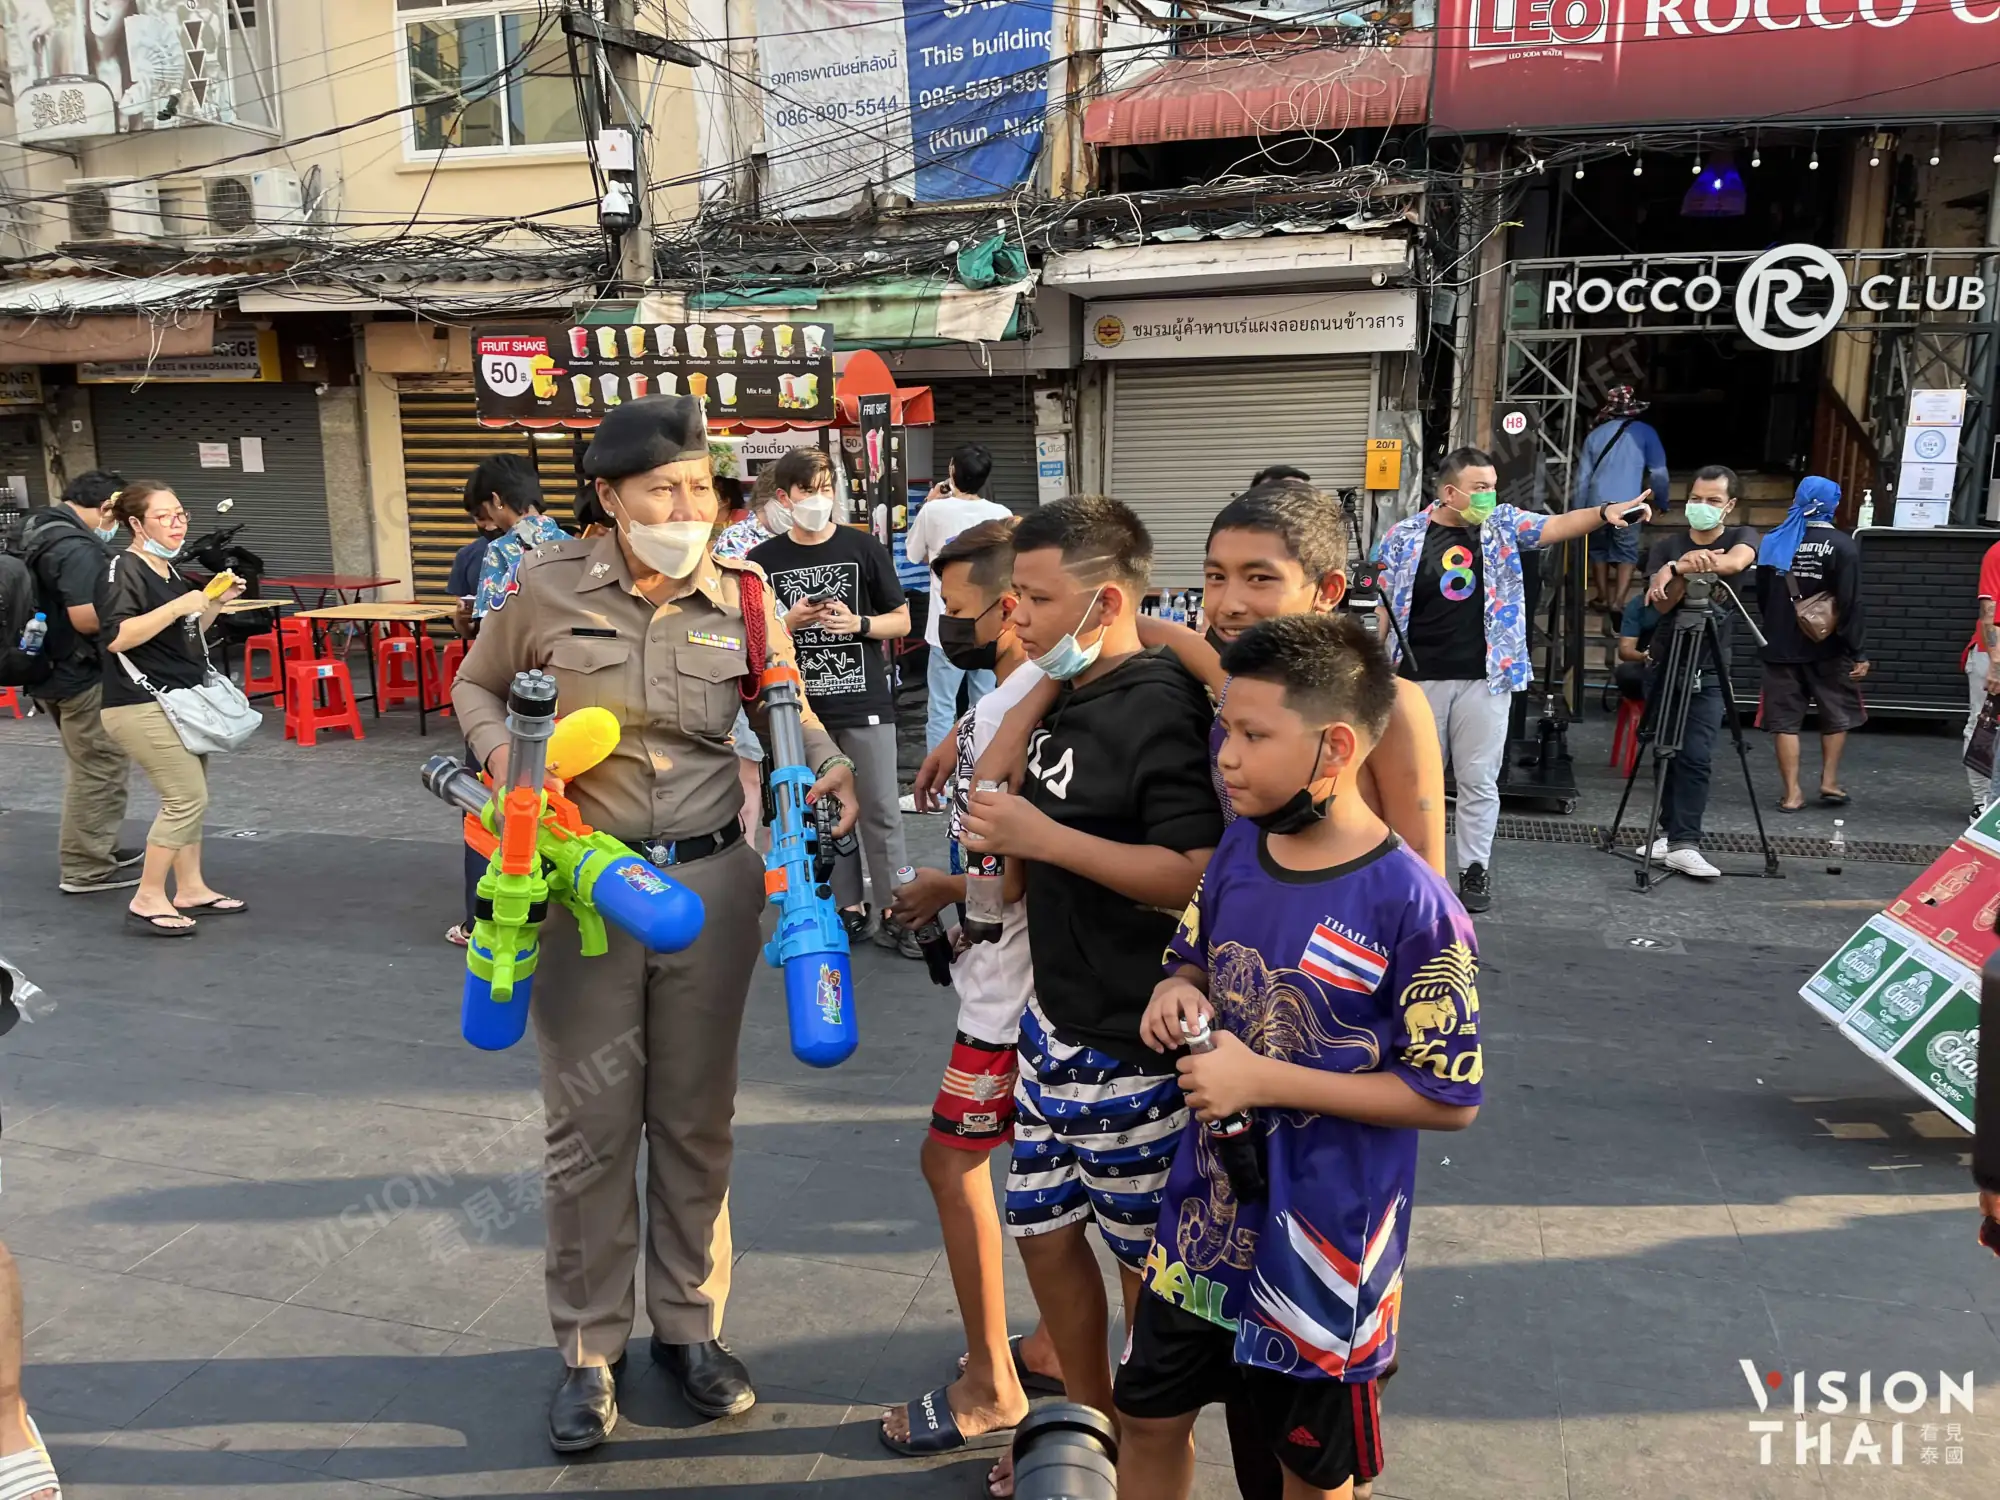 本地小朋友考山路大水仗，警察立刻没收水枪制止劝说（Vision Thai 看见泰国）